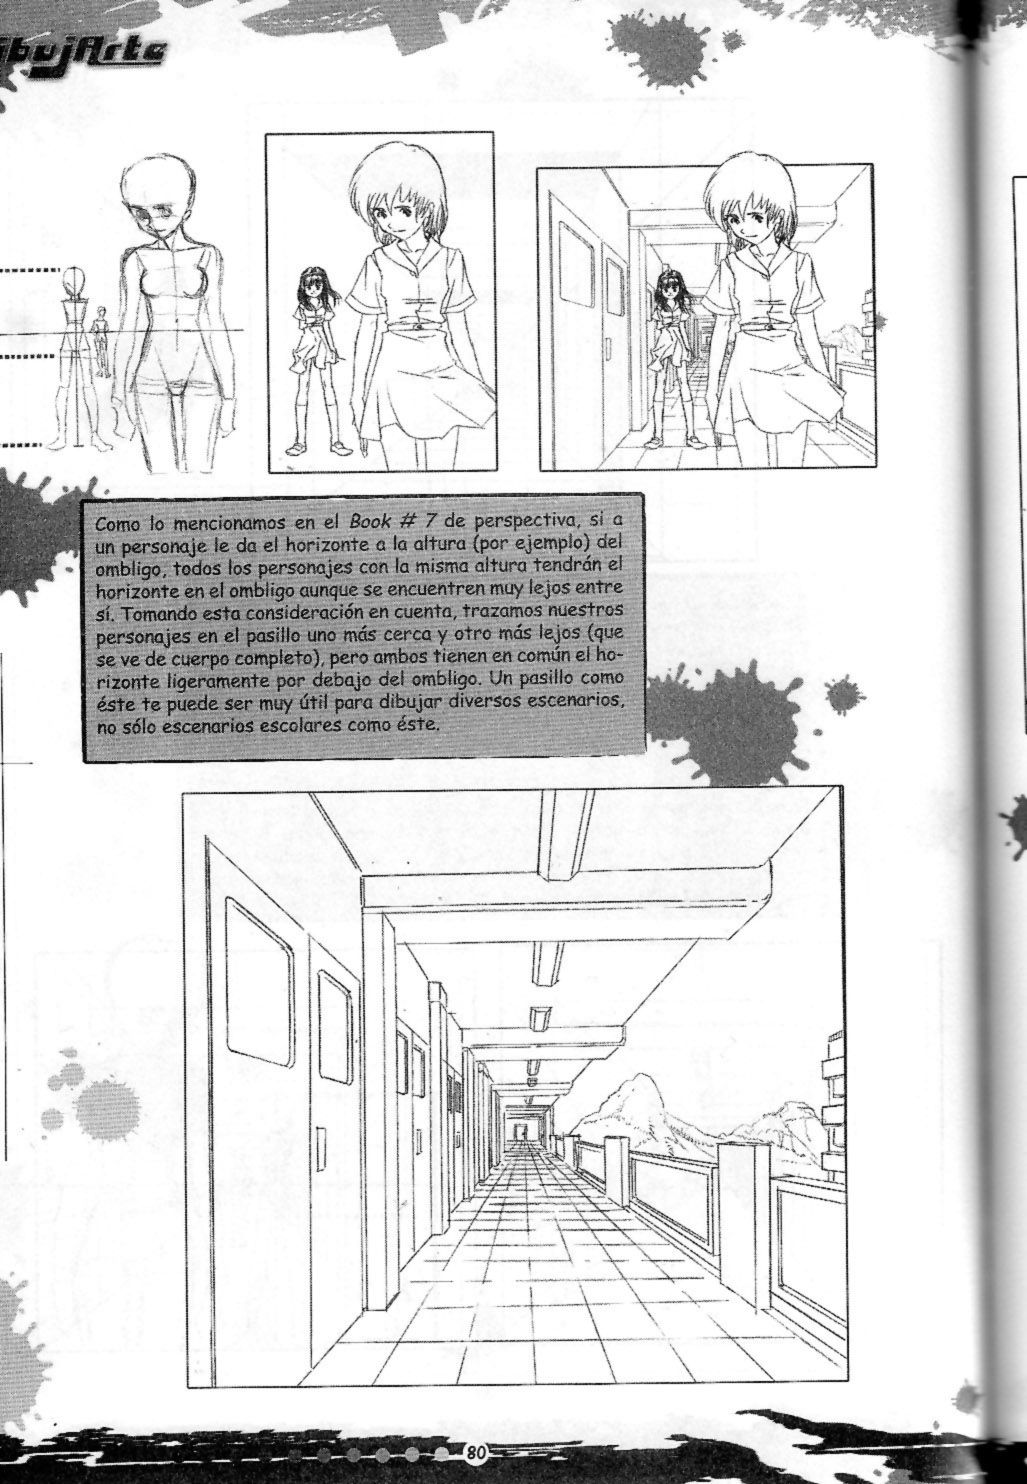 DibujArte Epecial Manga #15/20 - Especial fondos [Spanish] 79